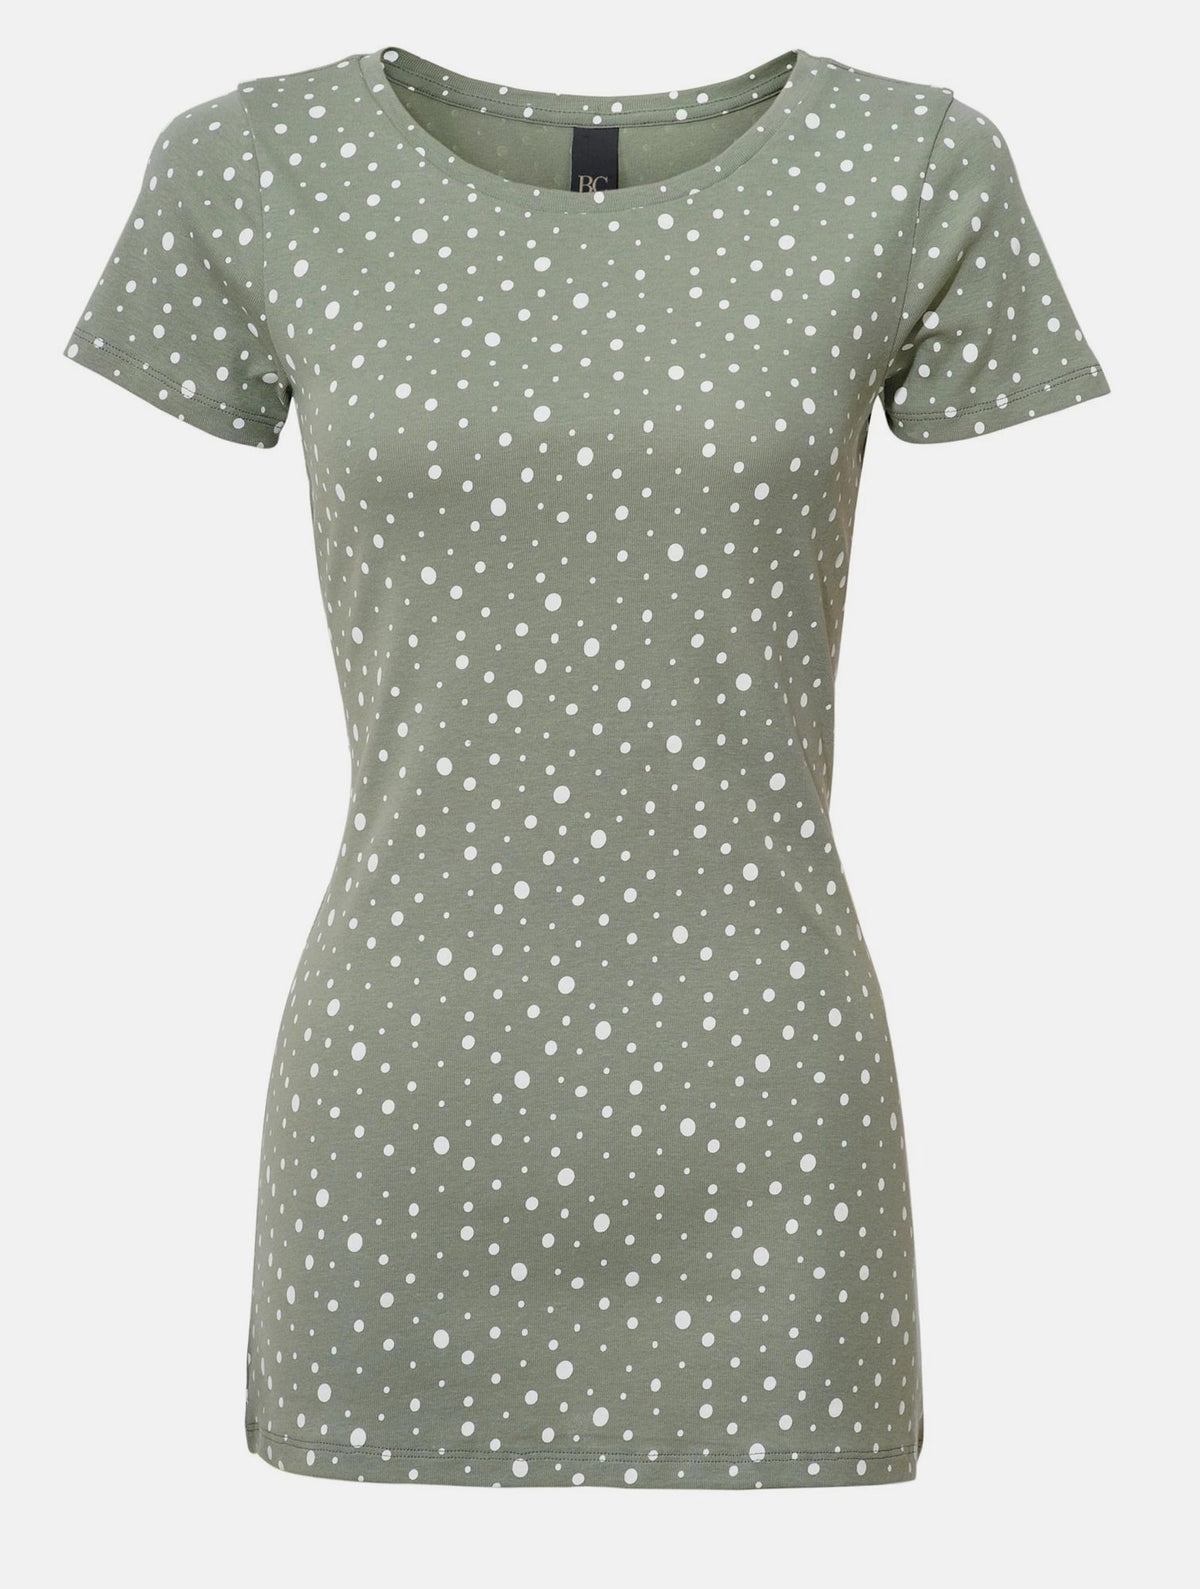 Linea Tesini Damen Druck Shirt, grün-gepunktet